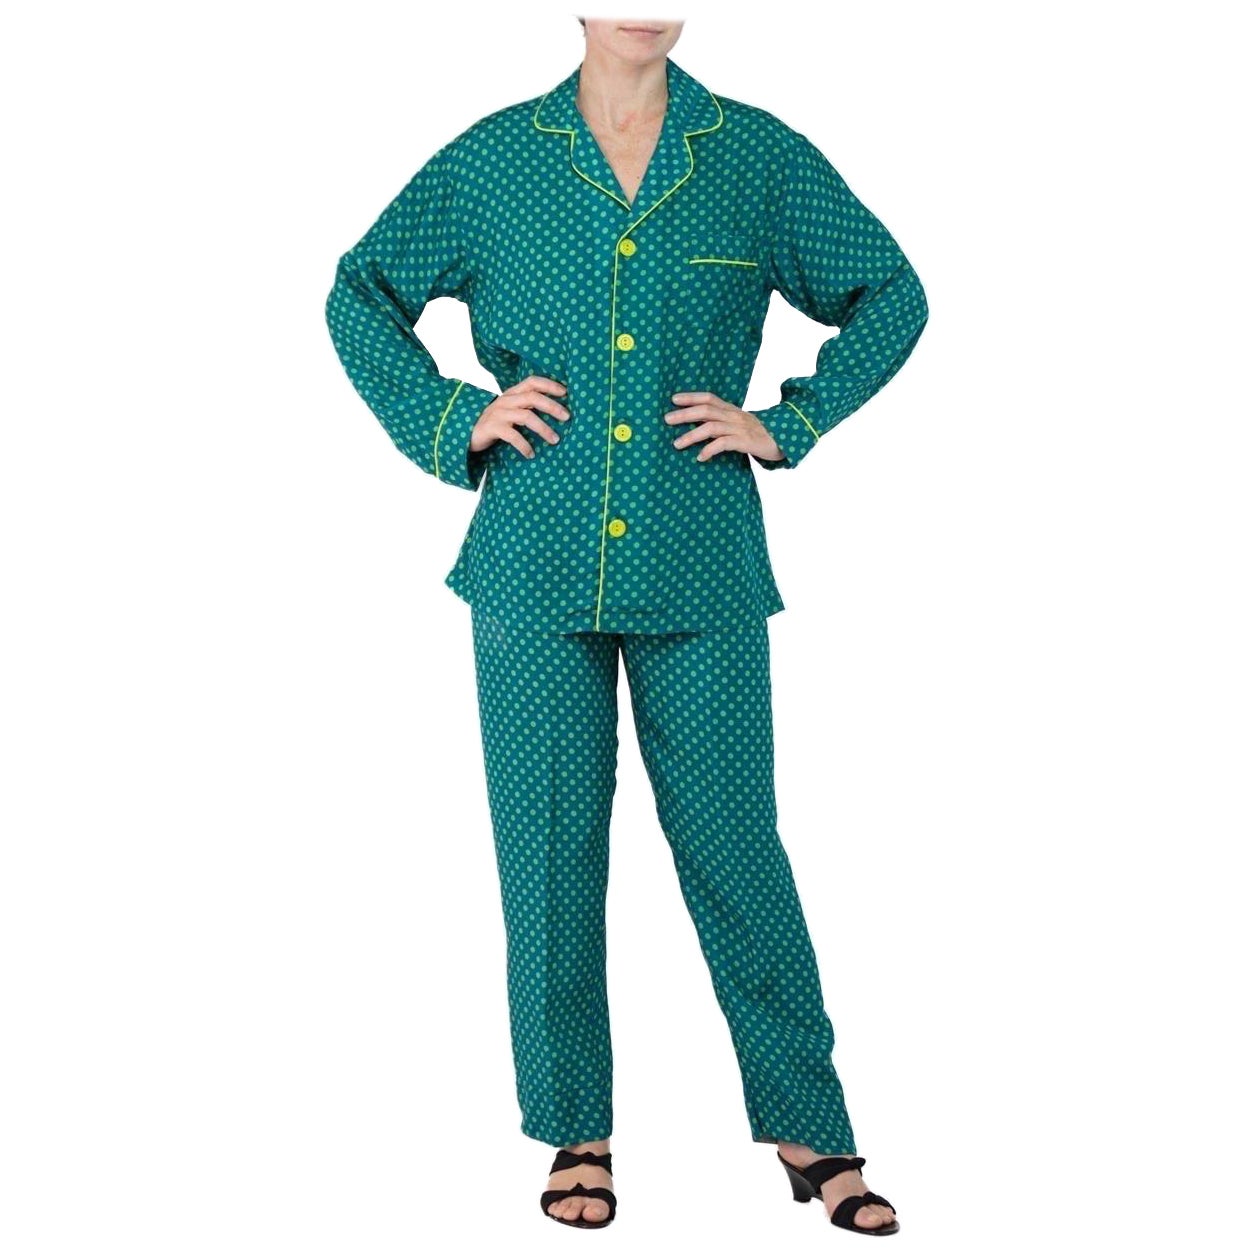 Morphew Collection Sea Green Polka Dot Print Cold Rayon Bias Draw String Pajamas For Sale